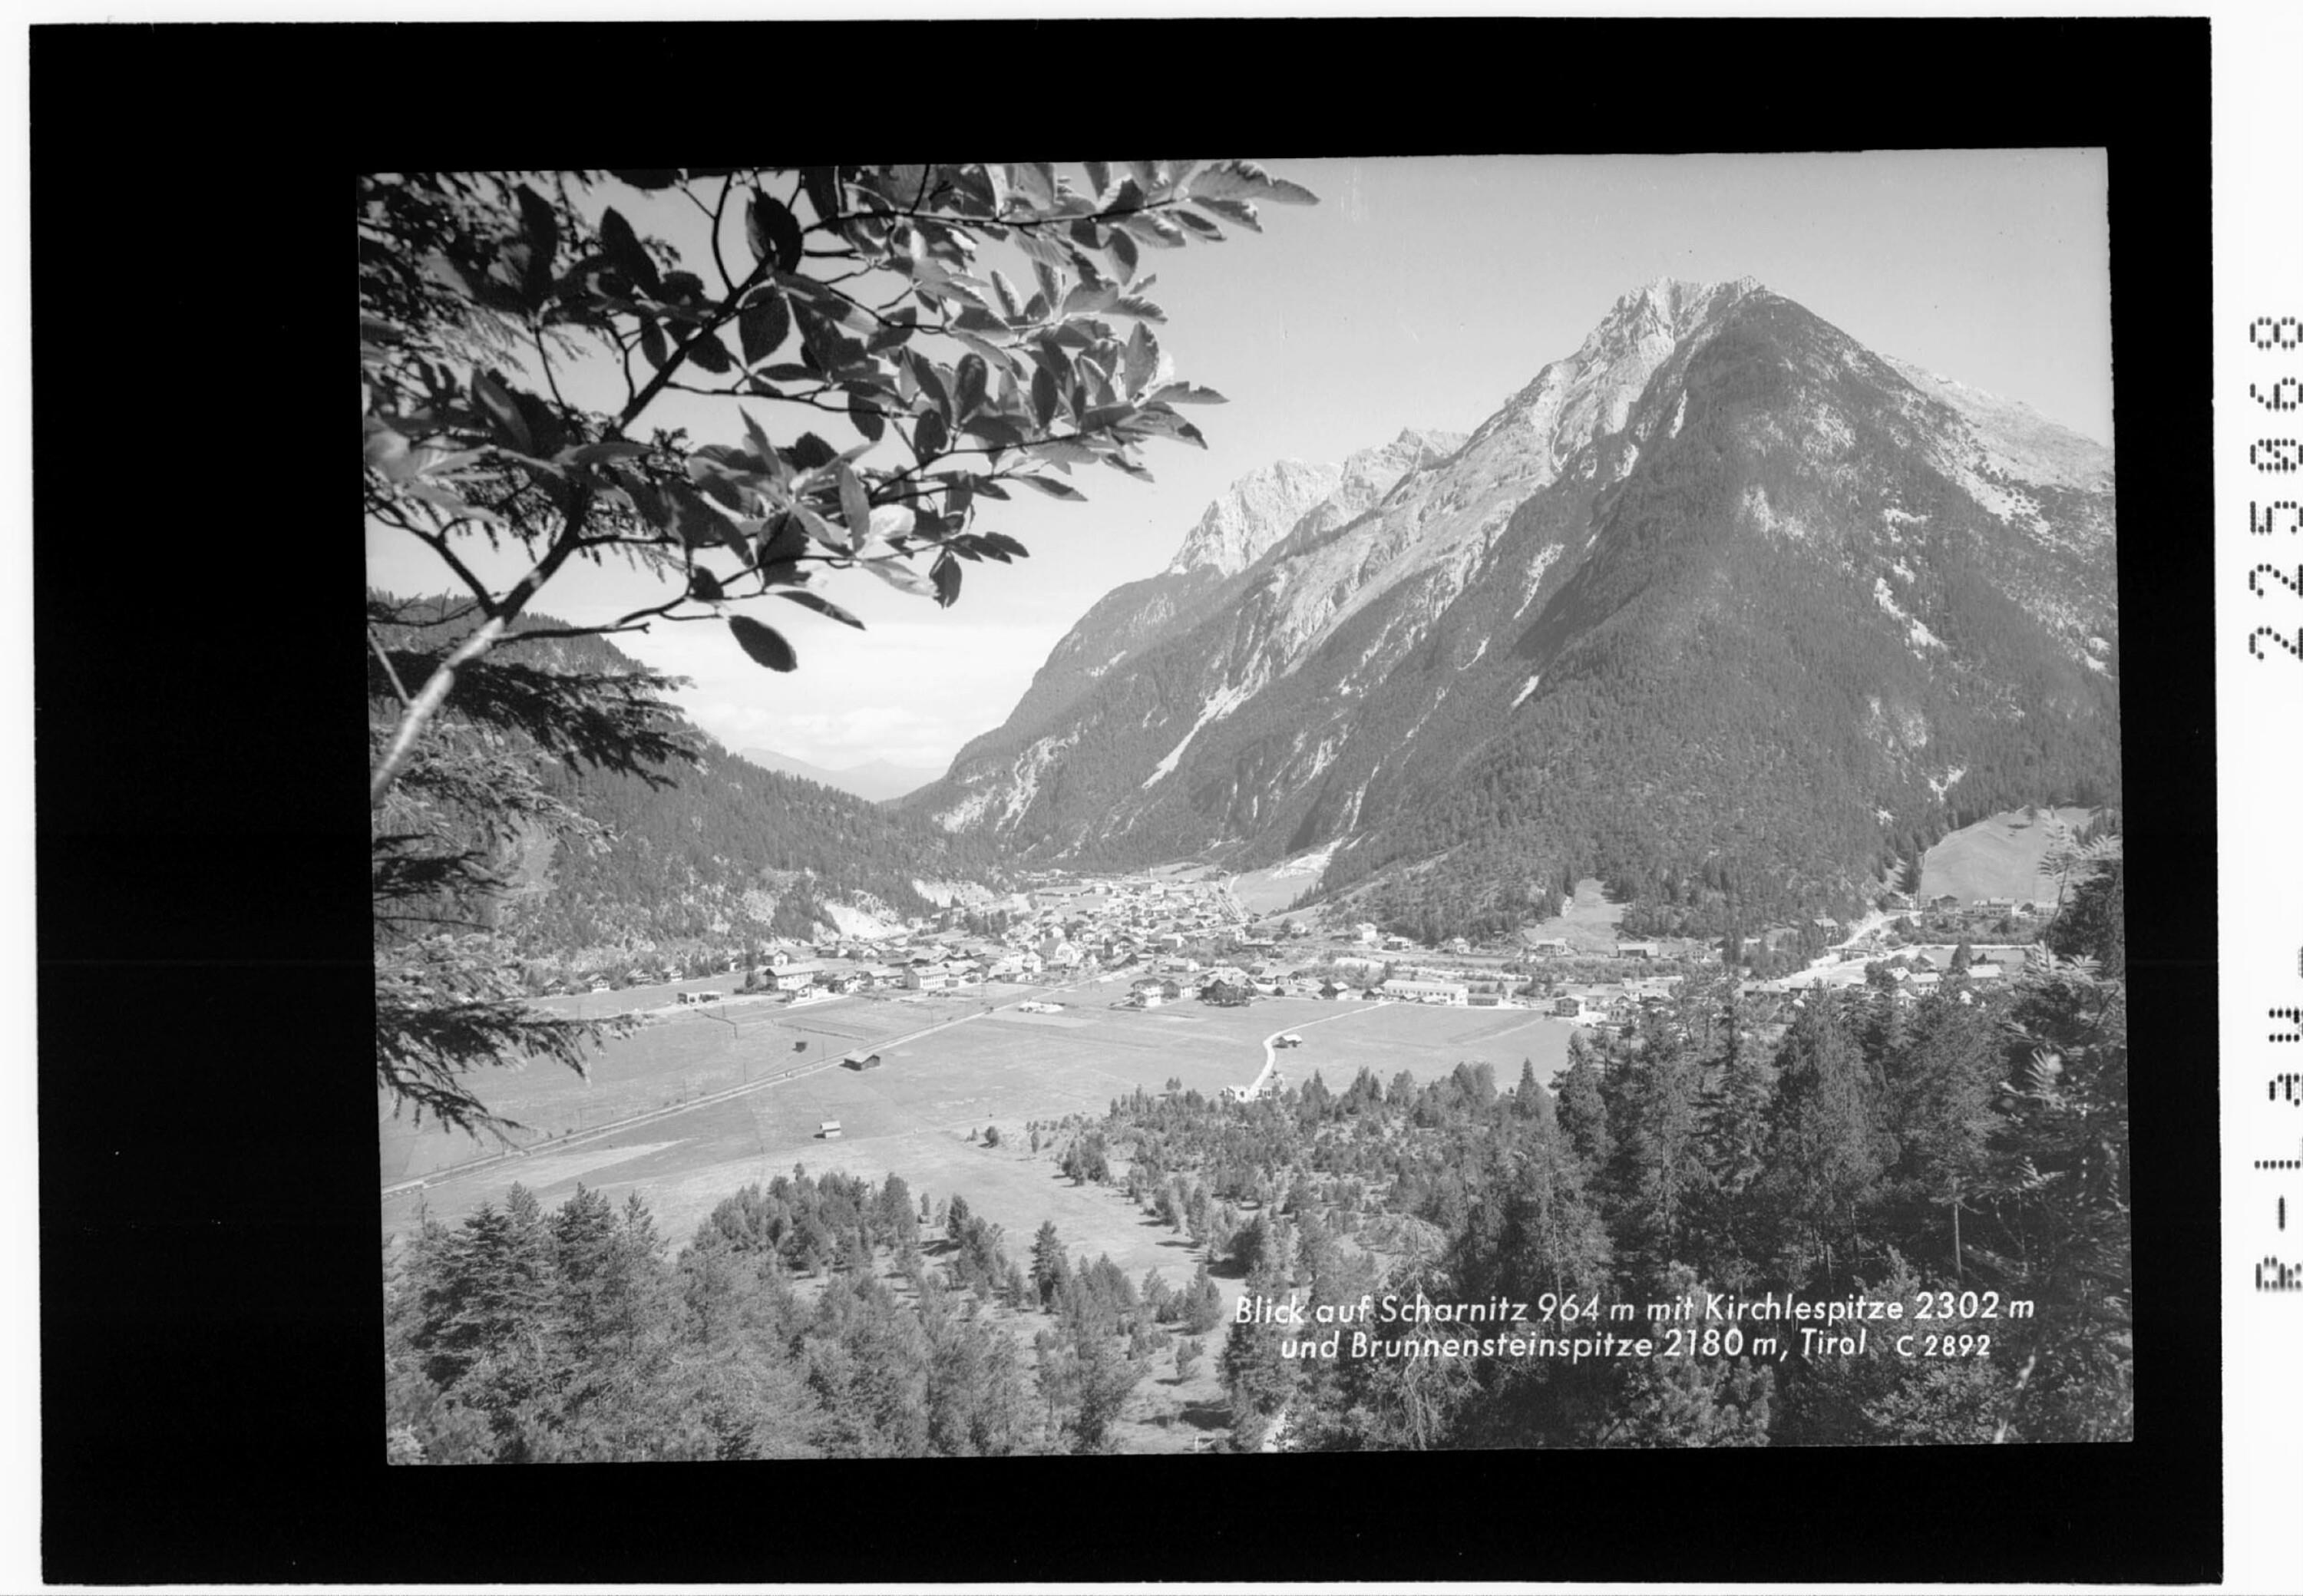 Blick auf Scharnitz 964 m mit Kirchlespitze 2302 m und Brunnensteinspitze 2180 m / Tirol></div>


    <hr>
    <div class=